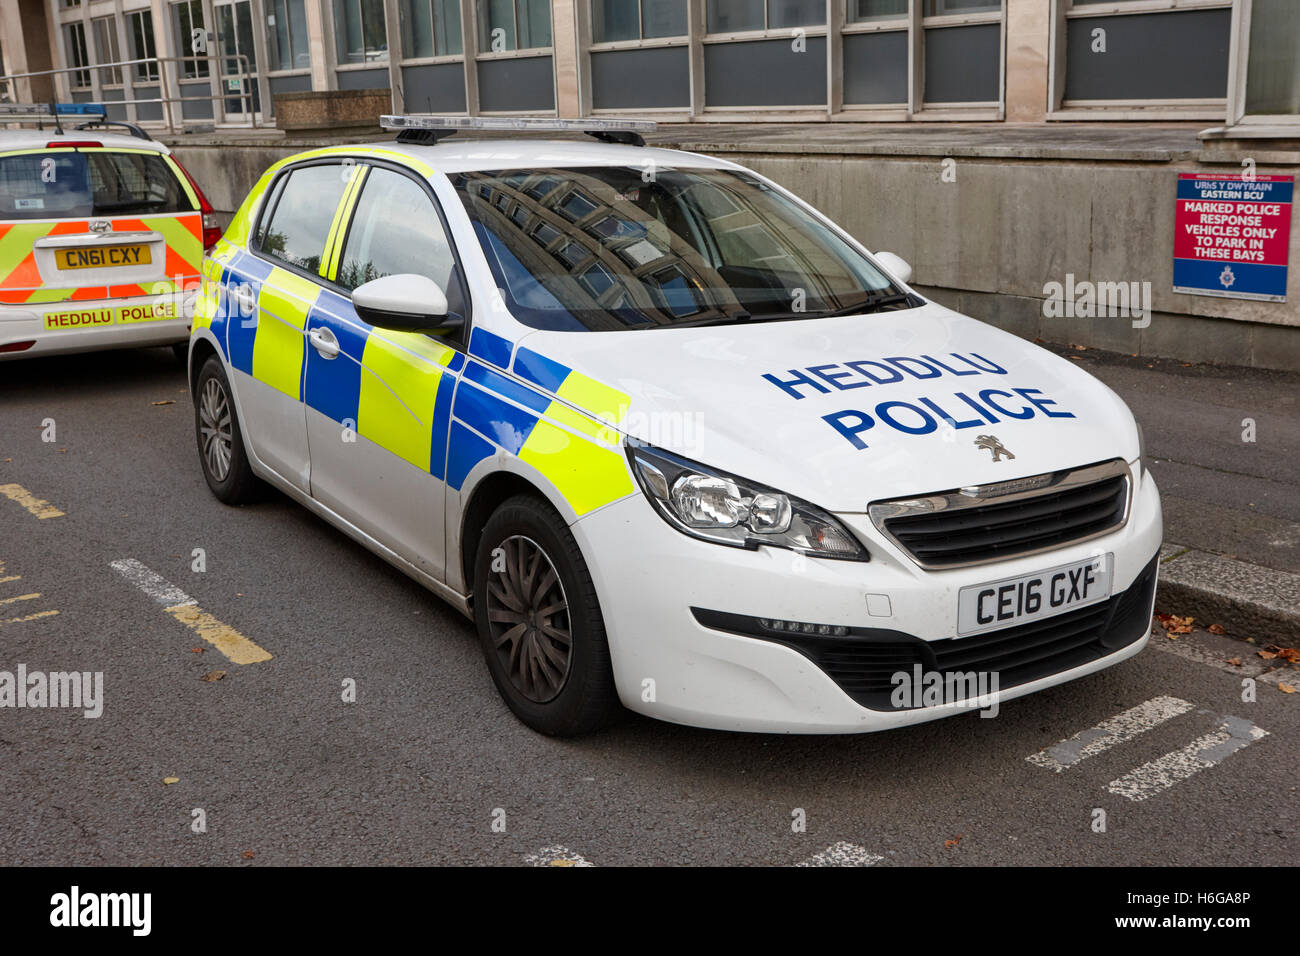 Südwales Polizei Heddlu zweisprachige Peugeot 308 Fahrzeug Lackierung Cardiff Wales Großbritannien Stockfoto